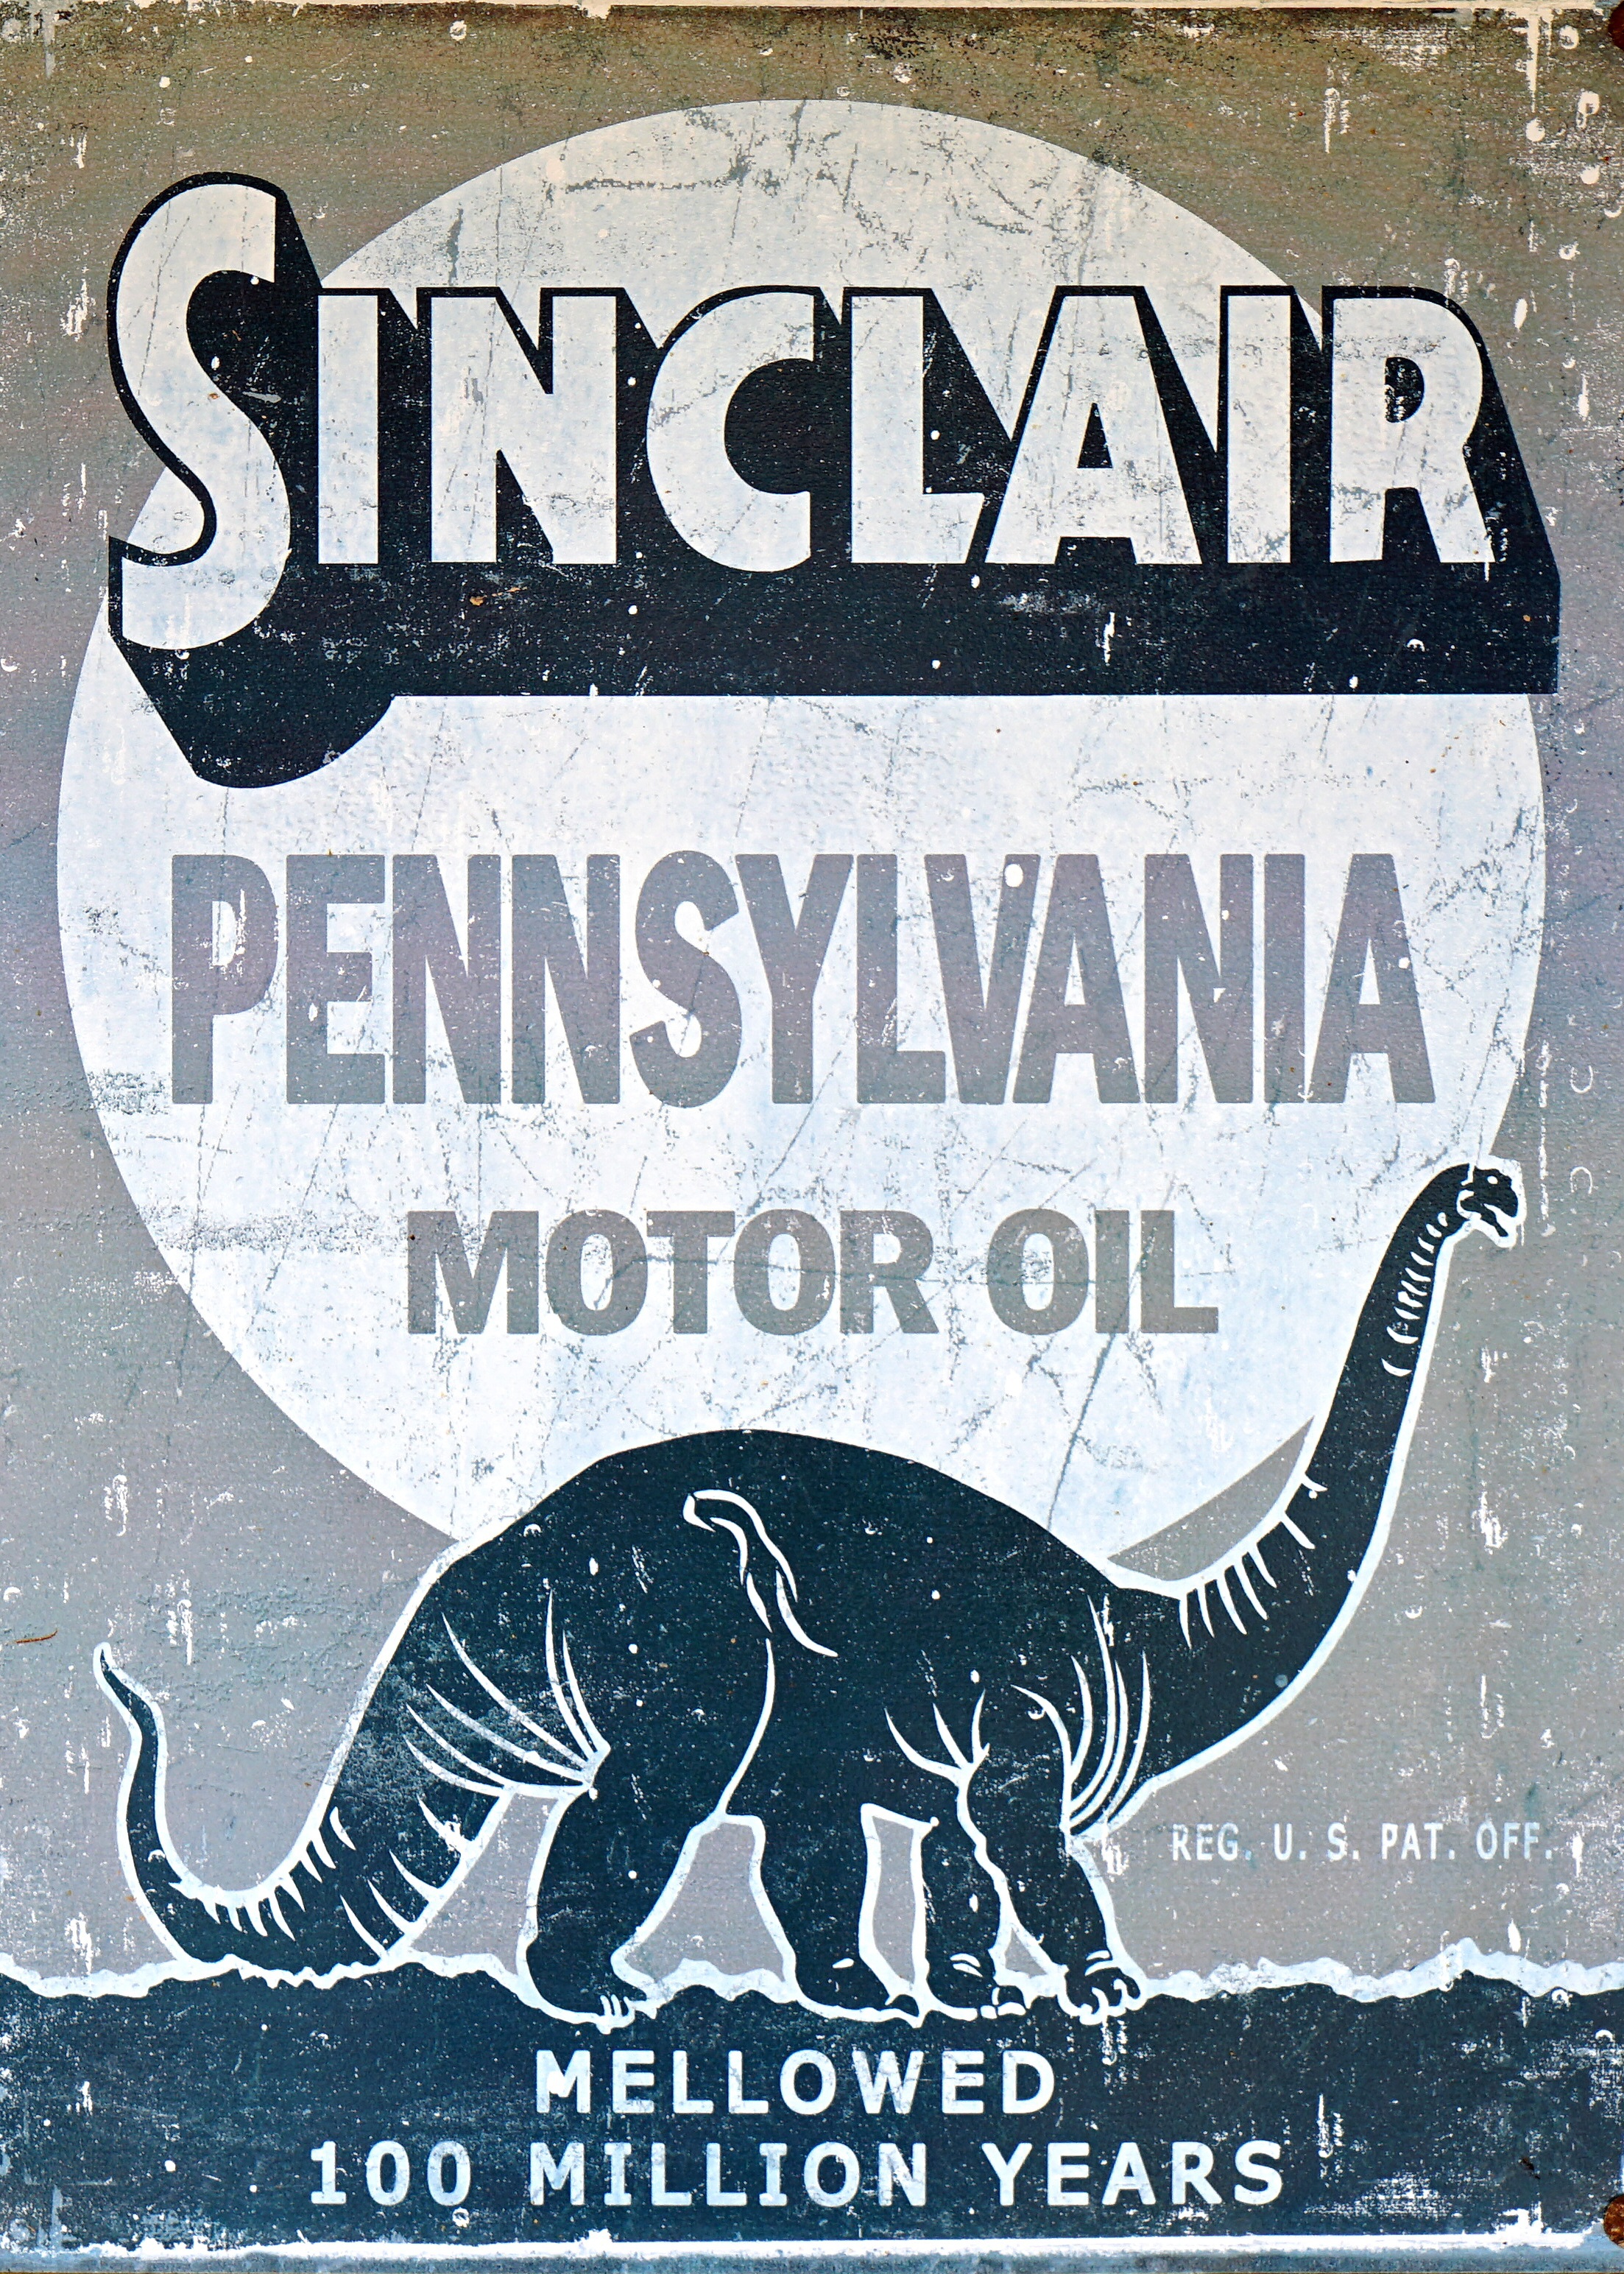 Ad sticker with a dynosaur